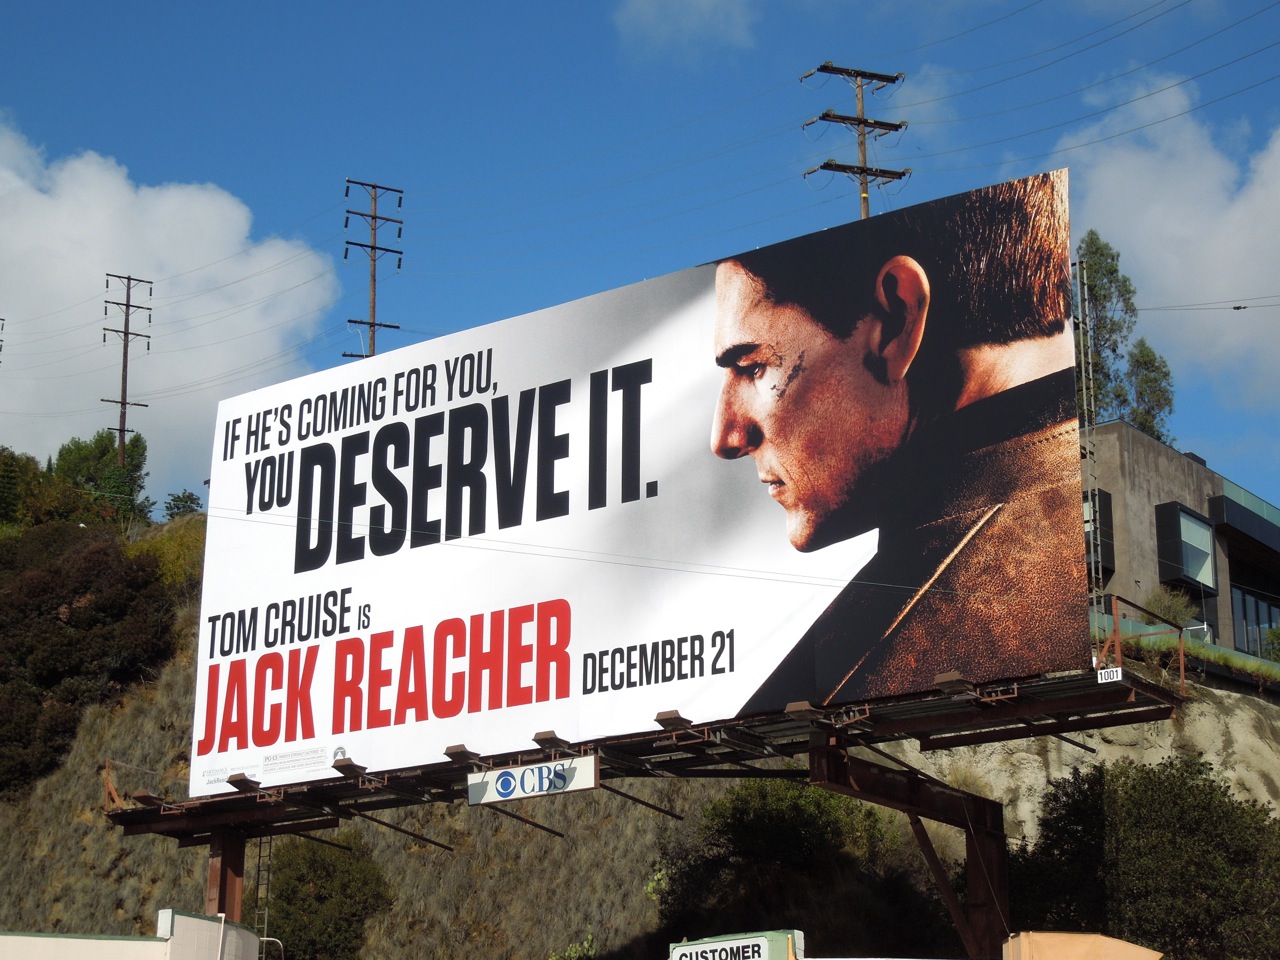 Watch Movie Jack Reacher 2 Online Full-length In-wall